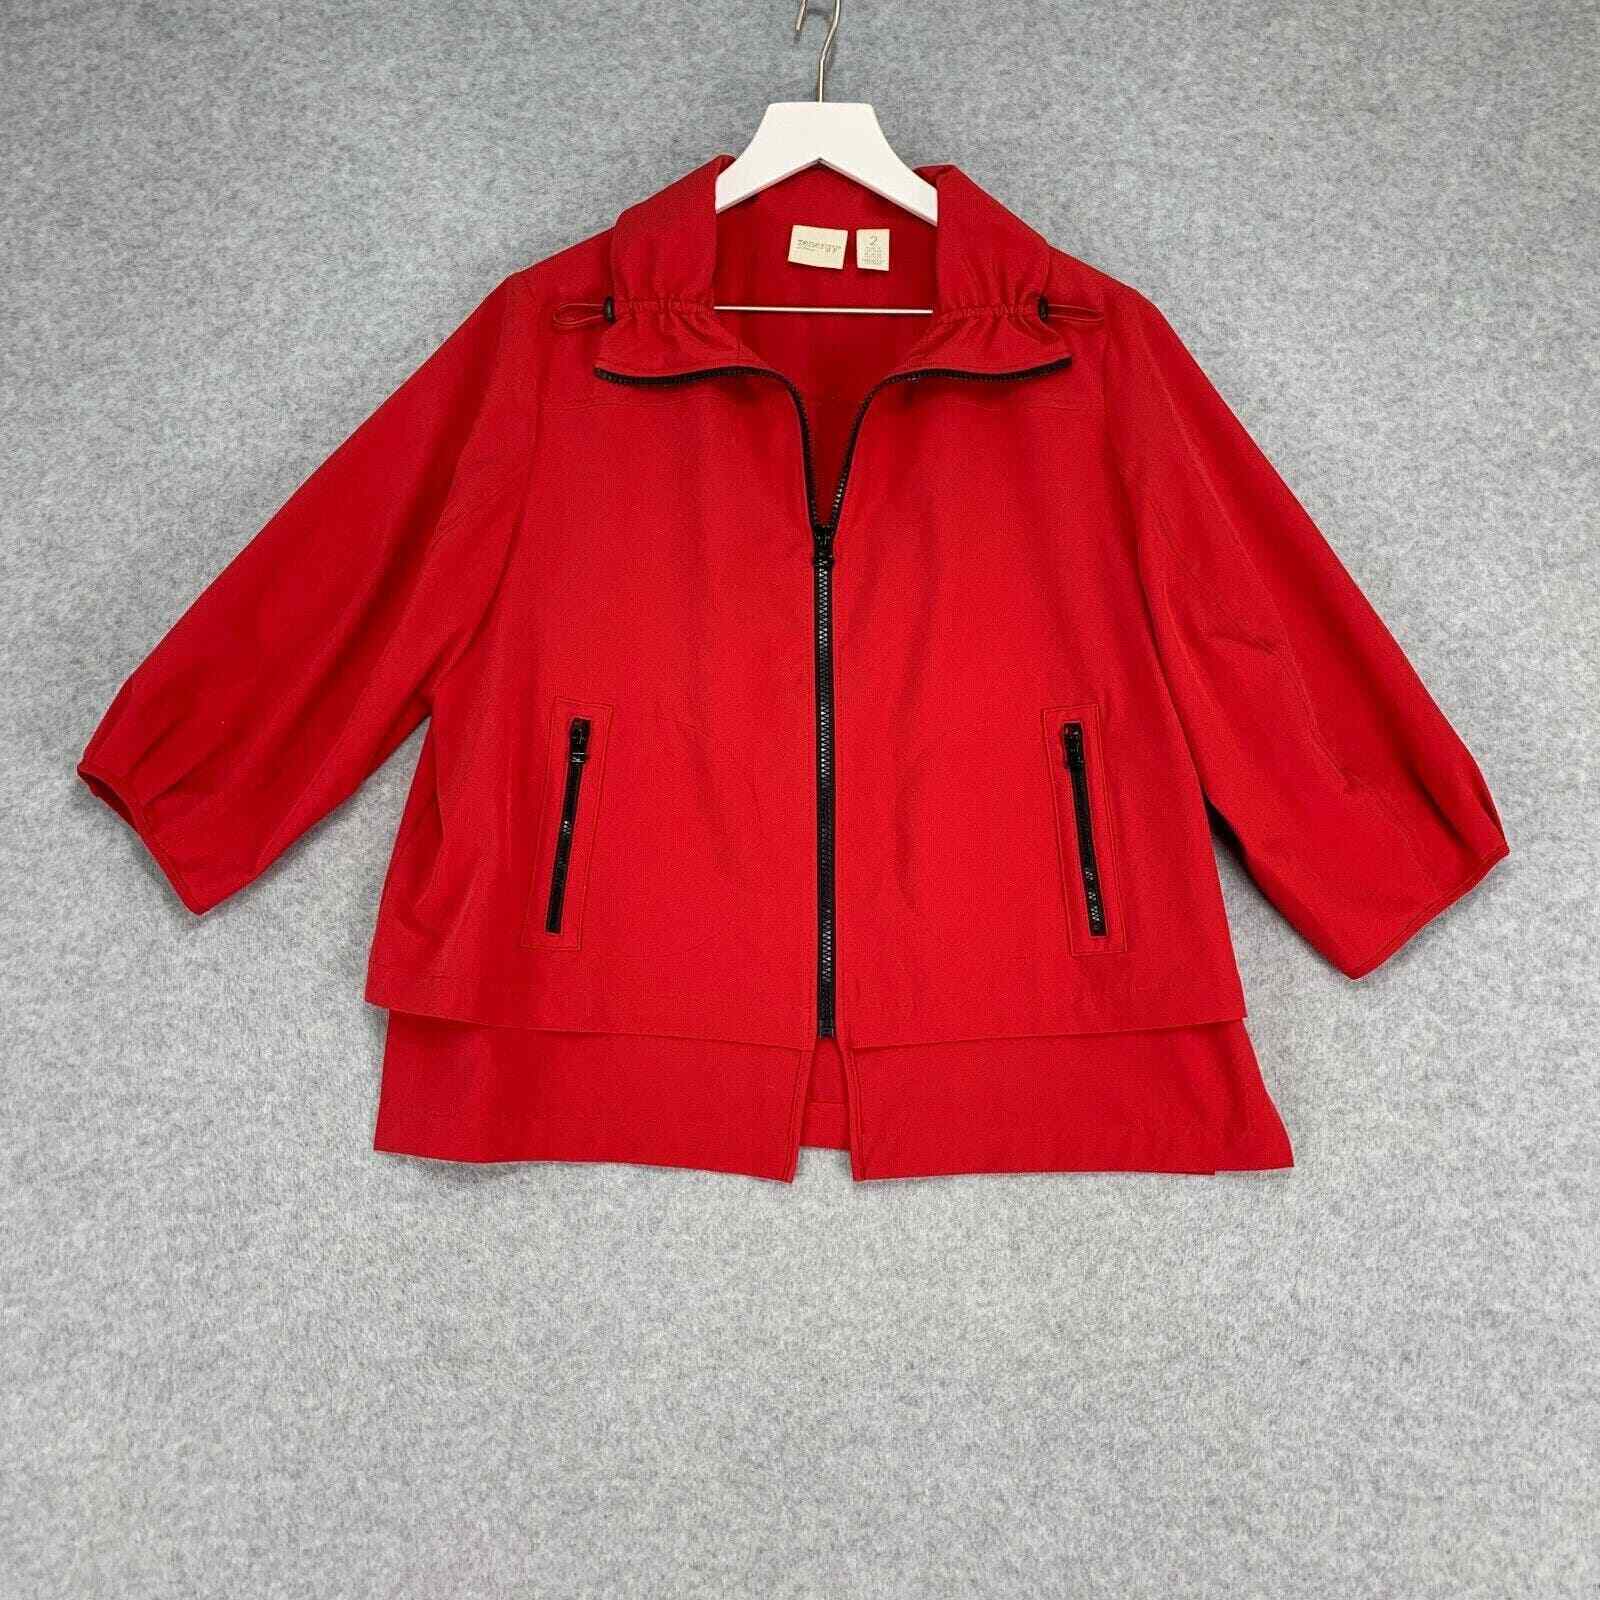 Chicos Zenergy Jacket Womens Large 2 Red Full Zip… - image 1